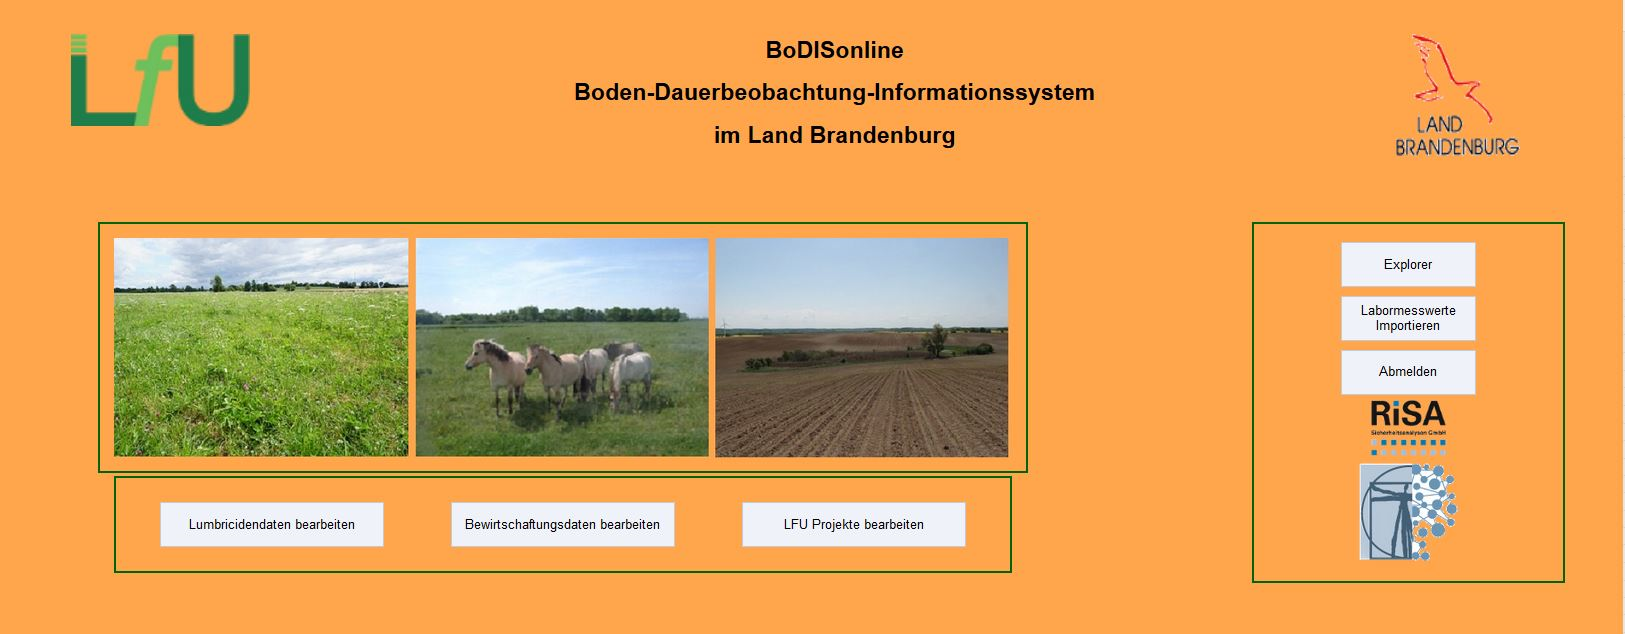 Die Abbildung zeigt die Startseite des Bodeninformationssystems BoDISonline des Landes Brandenburg. Diese Startseite ist bebildert. Zu sehen sind ein Grünlandstandort, eine Naturschutzfläche mit Wildpferden und eine umgepflügte Ackerfläche.